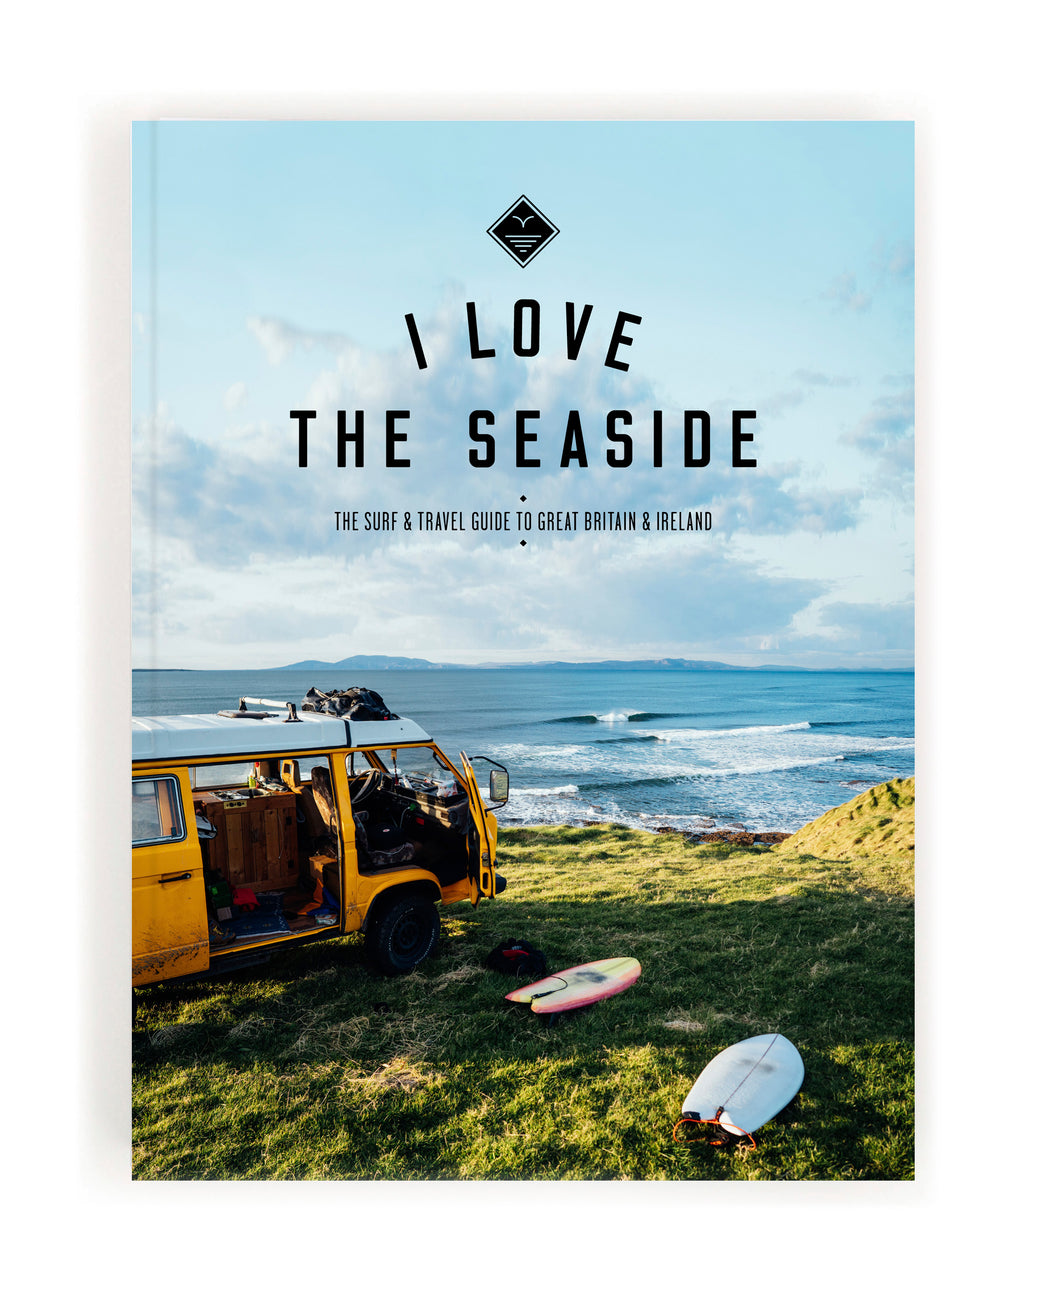 I-Love-the-Seaside-Guide-to-Great-Britain-and-Ireland-Buch-Surf-Reiseführer-für-Großbritanien-und-Irland-1